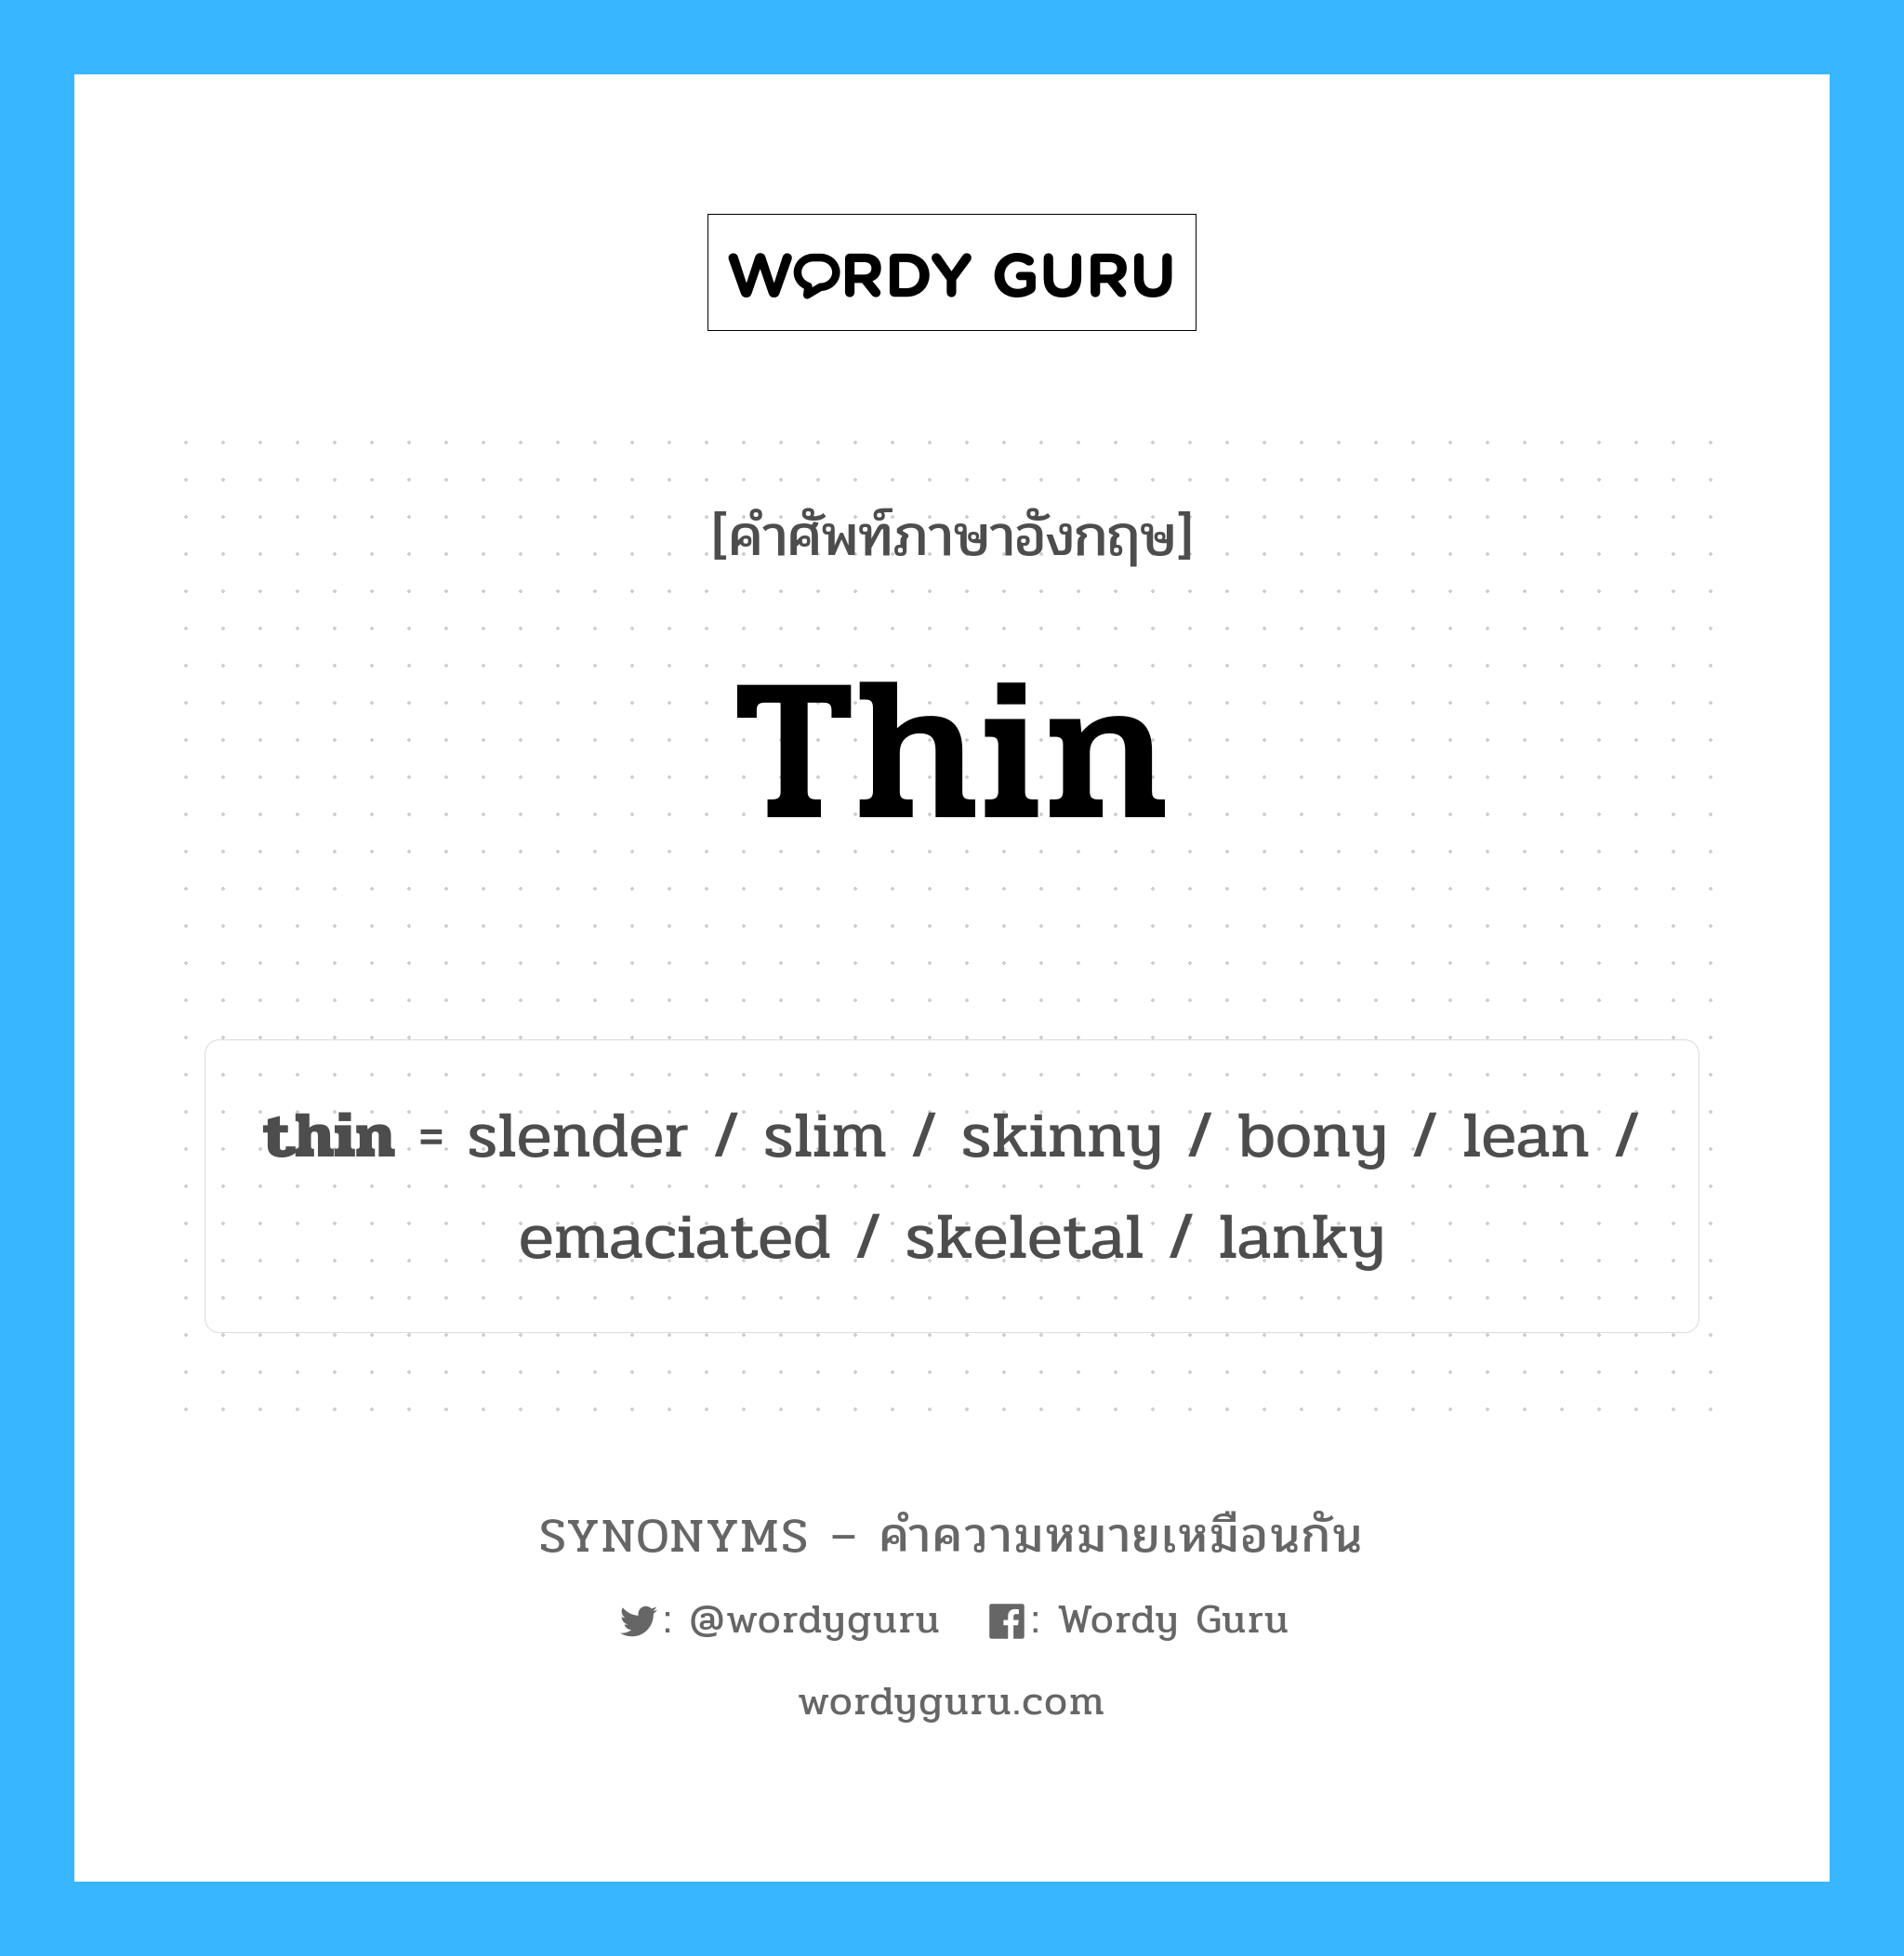 slender เป็นหนึ่งใน thin และมีคำอื่น ๆ อีกดังนี้, คำศัพท์ภาษาอังกฤษ slender ความหมายคล้ายกันกับ thin แปลว่า เรียว หมวด thin